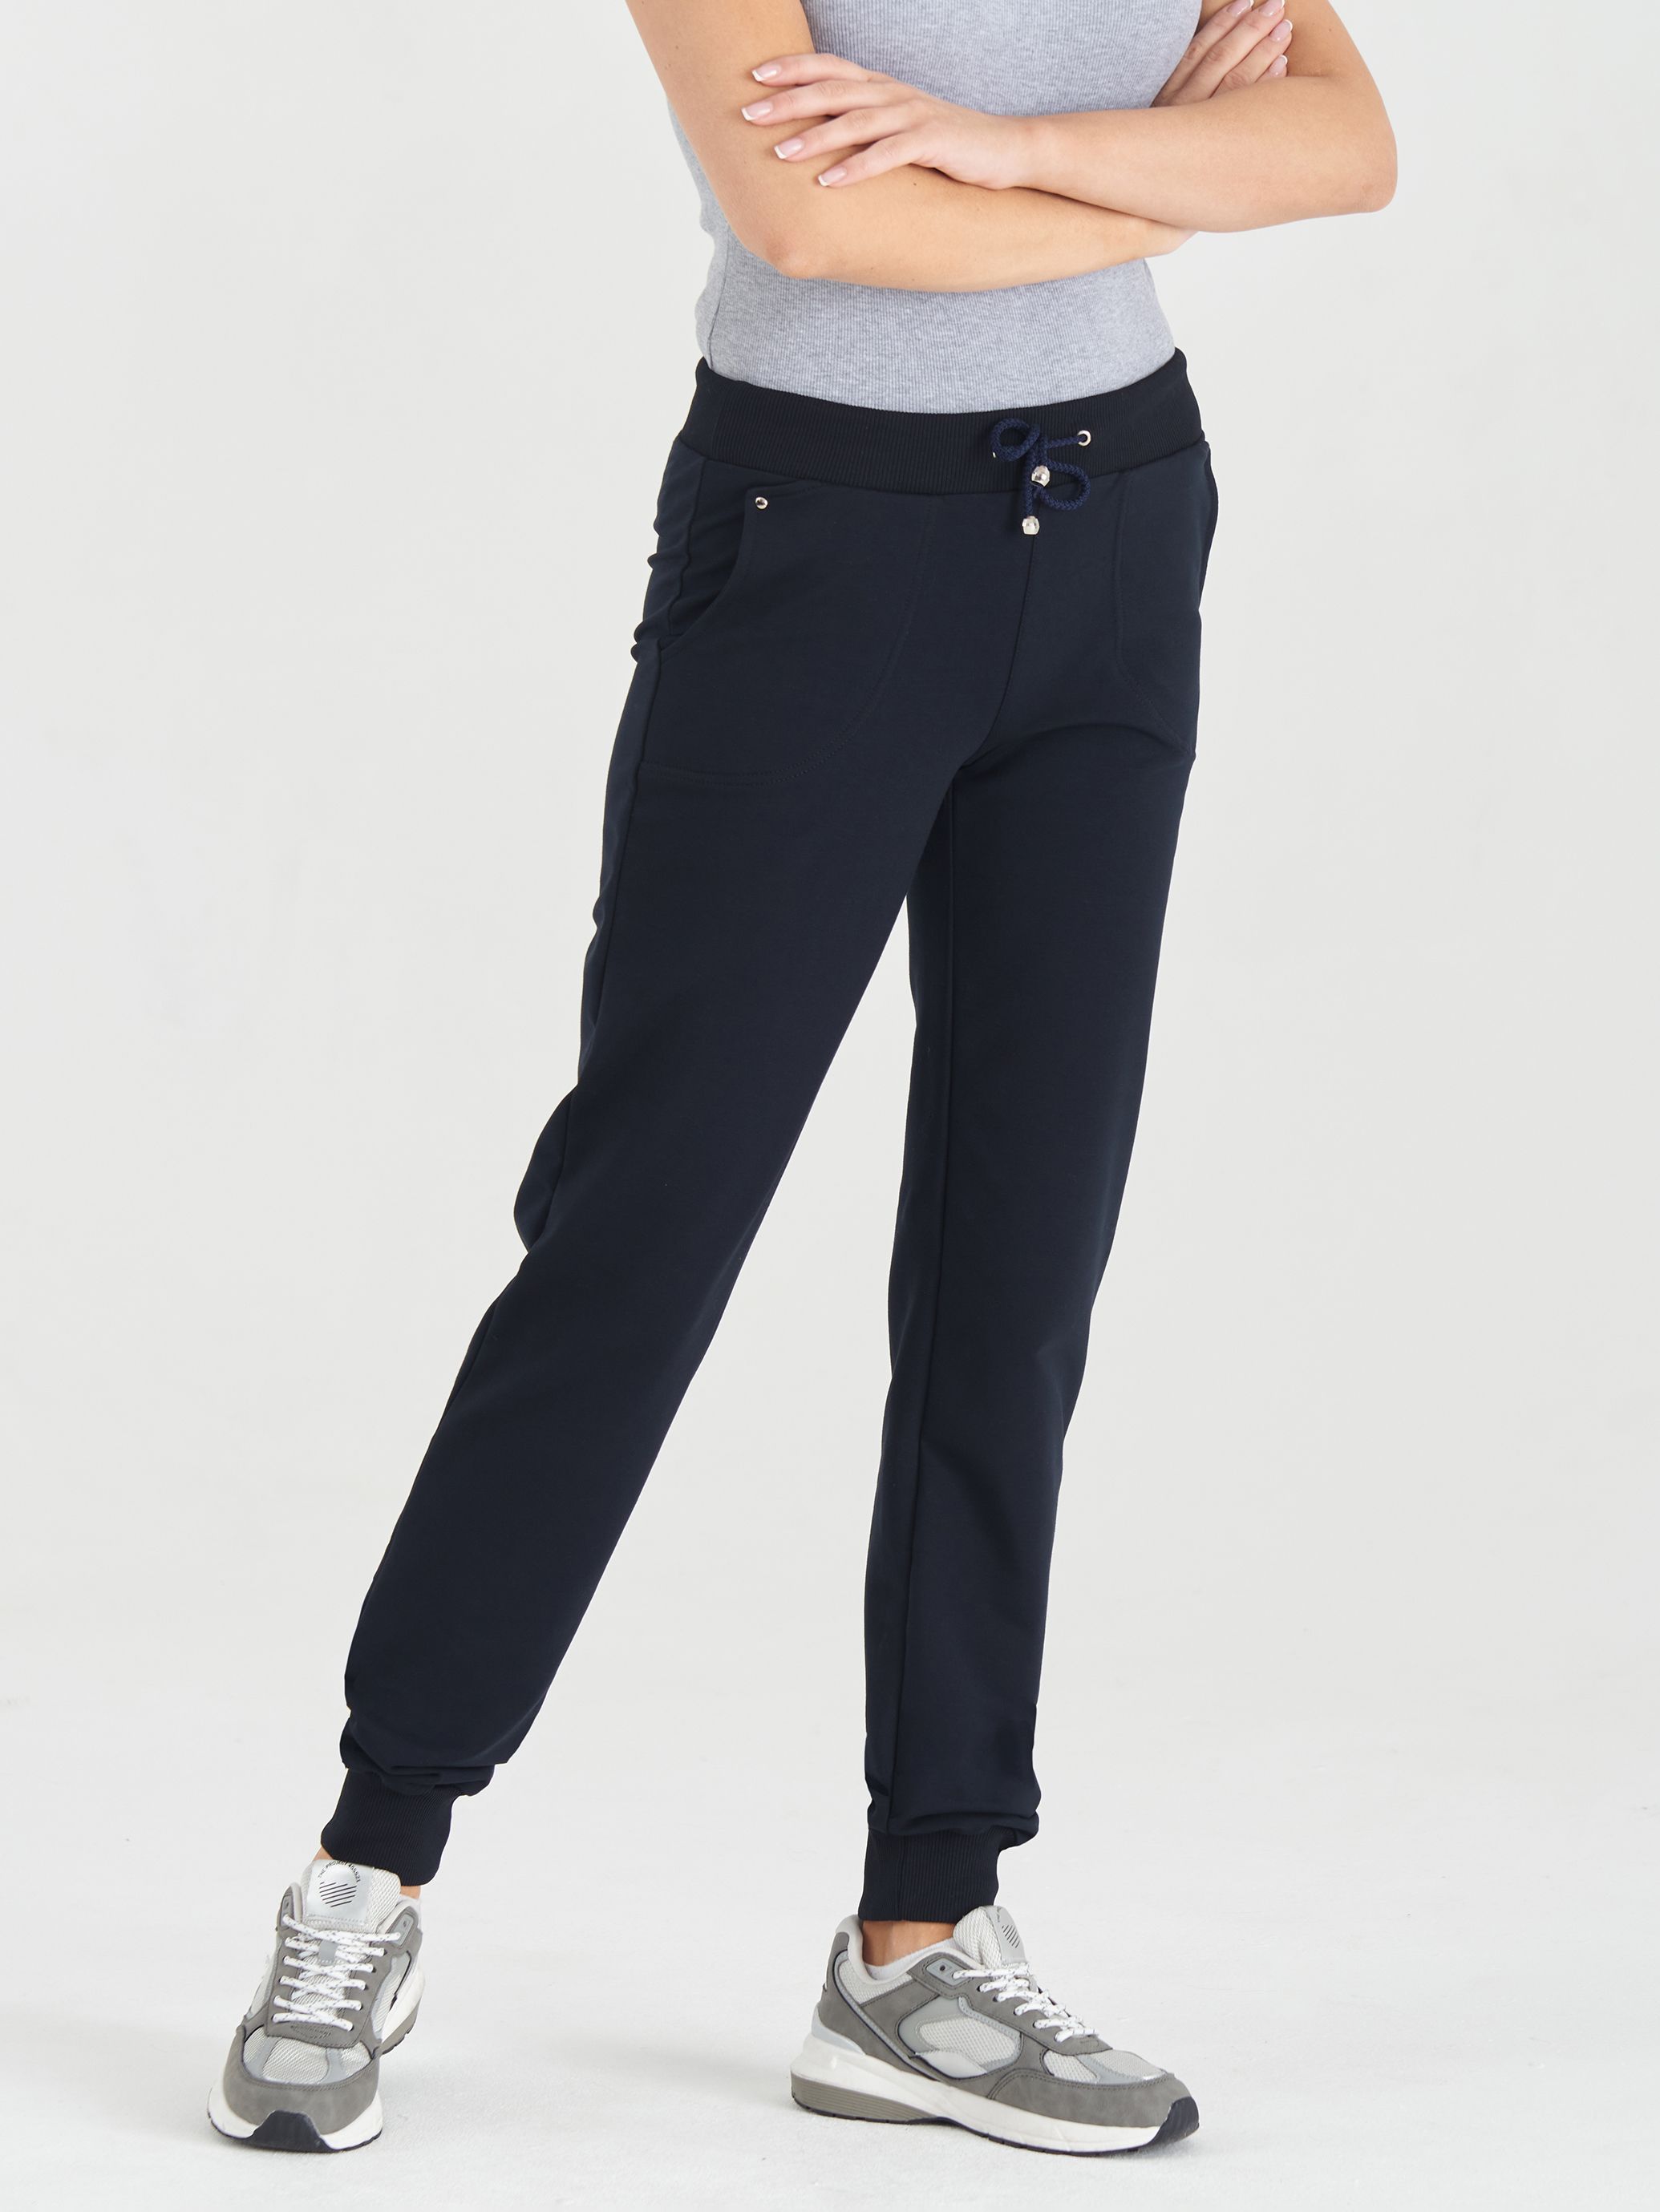 Спортивные брюки женские LAINA LAINA-708 синие 48 RU